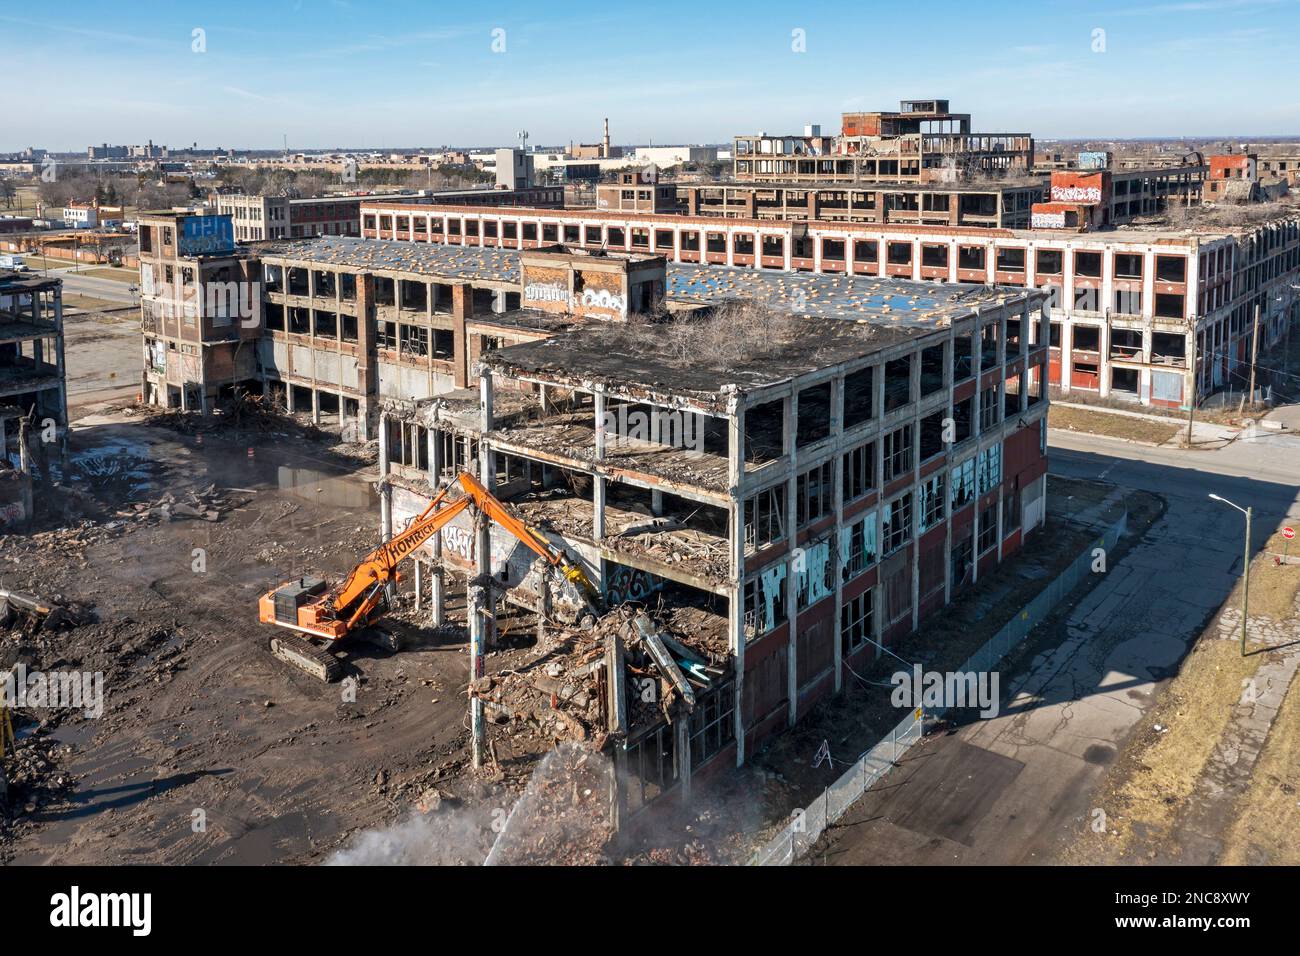 Detroit, Michigan - demolizione di una parte dell'impianto di produzione automobilistica Packard abbandonato. Inaugurato nel 1903, l'impianto di 3,5 milioni di metri quadrati impiegato Foto Stock